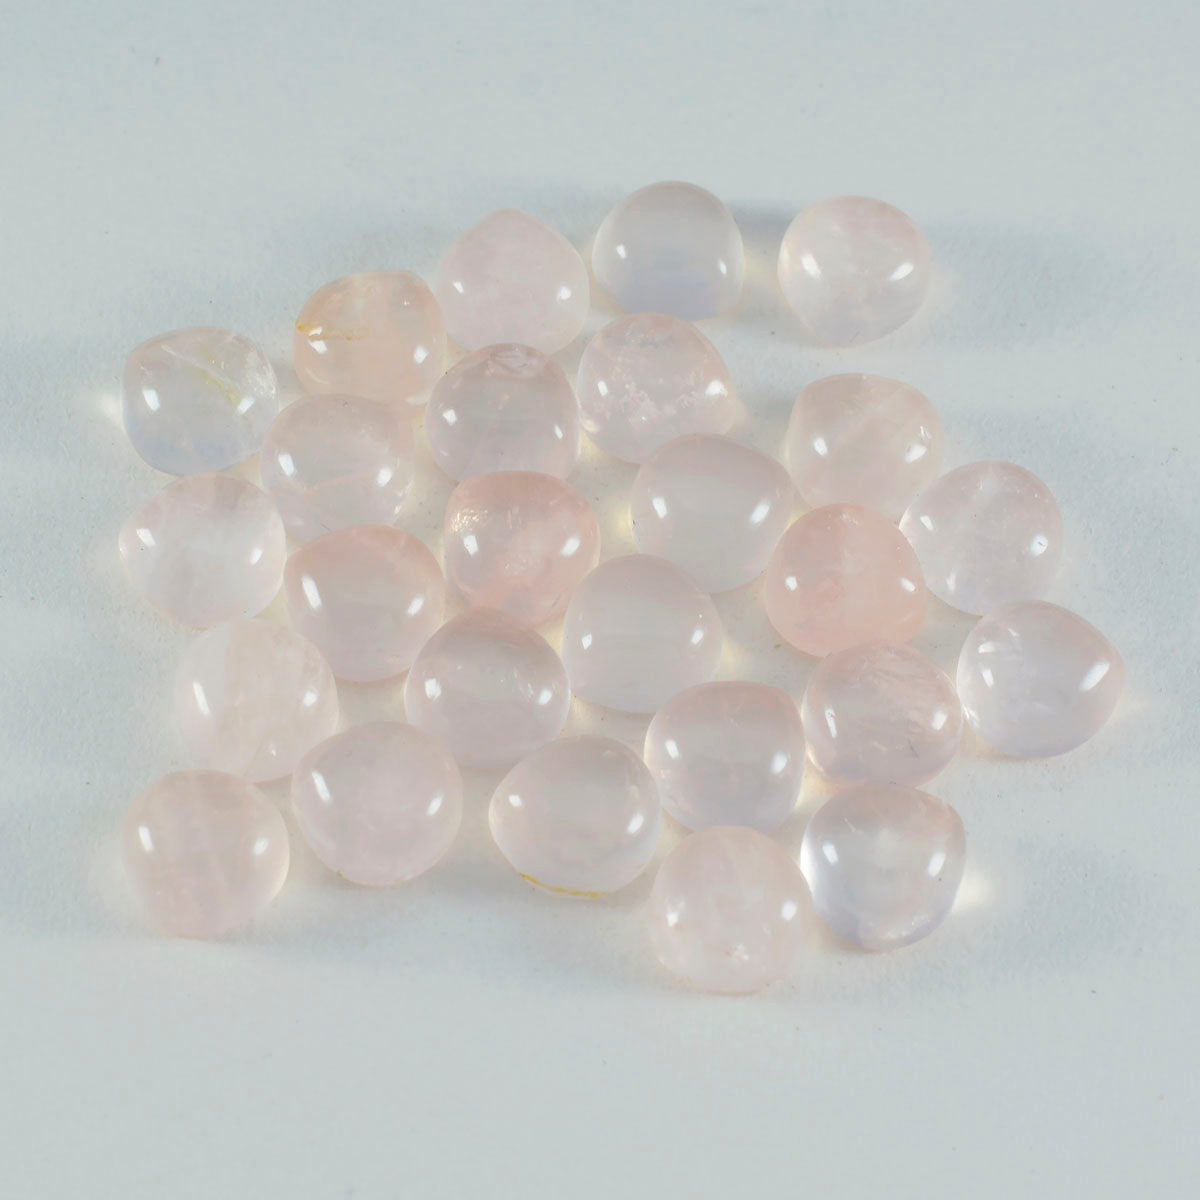 riyogems 1 pieza cabujón de cuarzo rosa rosa 10x10 mm en forma de corazón una piedra preciosa de calidad